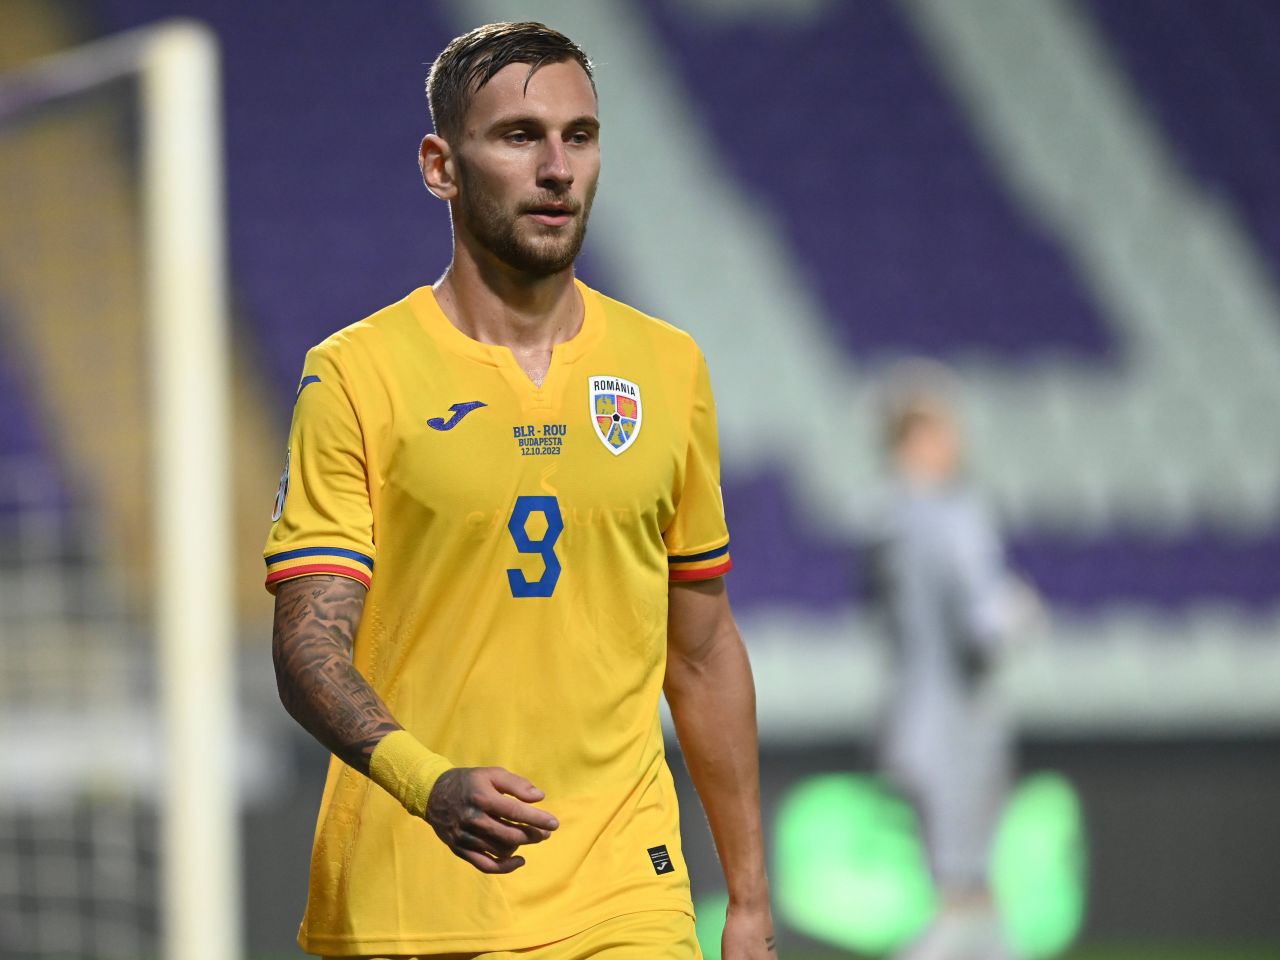 Veste excelentă pentru România! După Radu Drăgușin, un alt român poate ajunge în Premier League _9